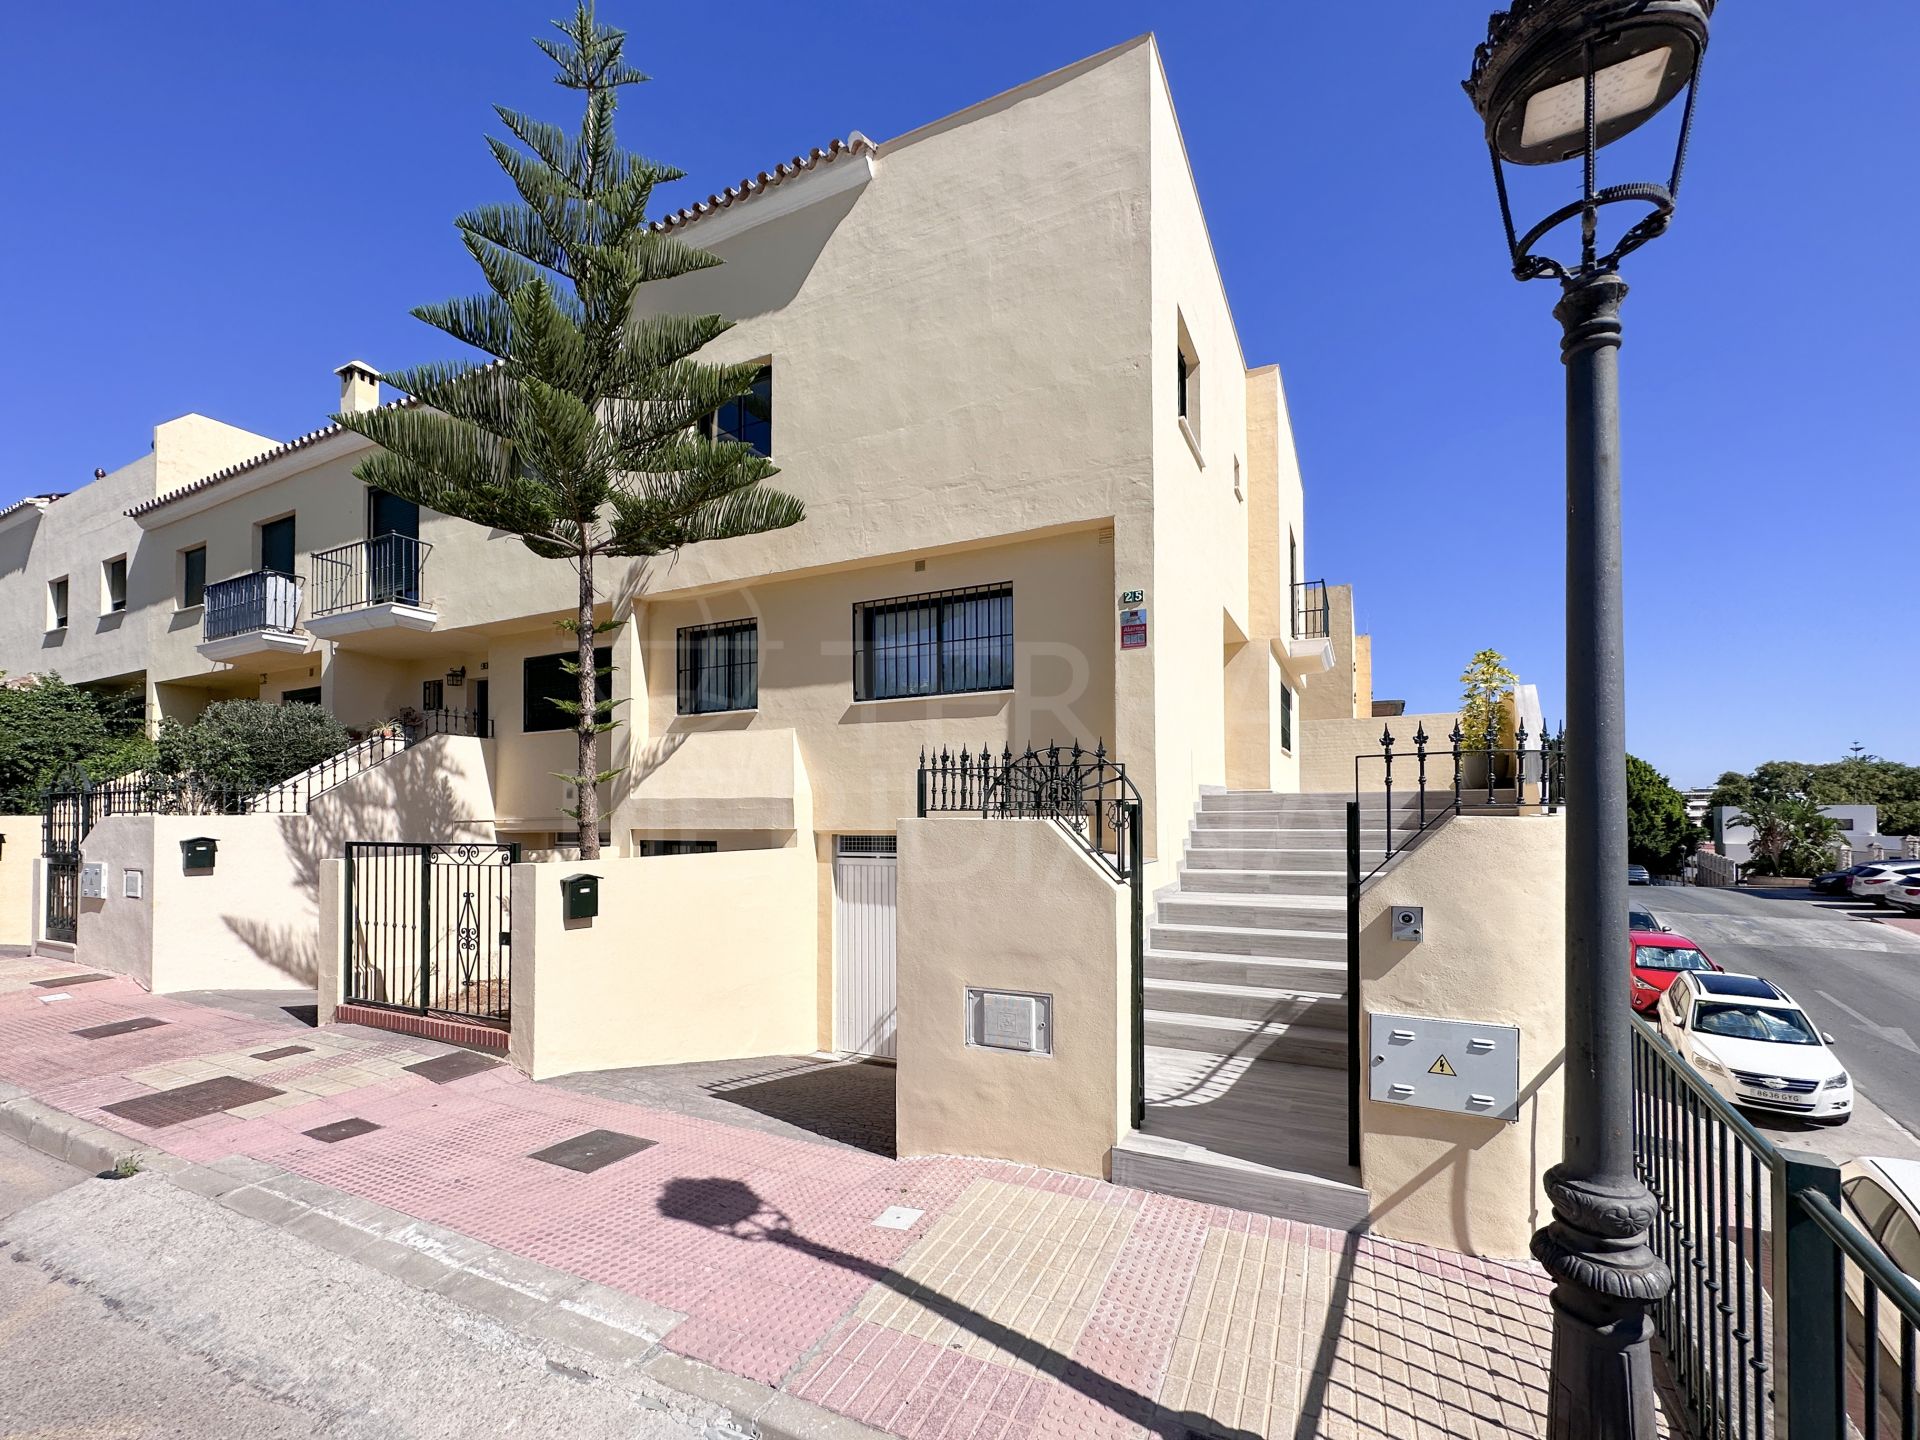 Spectaculaire maison de ville de 3 chambres entièrement rénovée avec vue sur la mer à vendre dans le centre ville d'Estepona